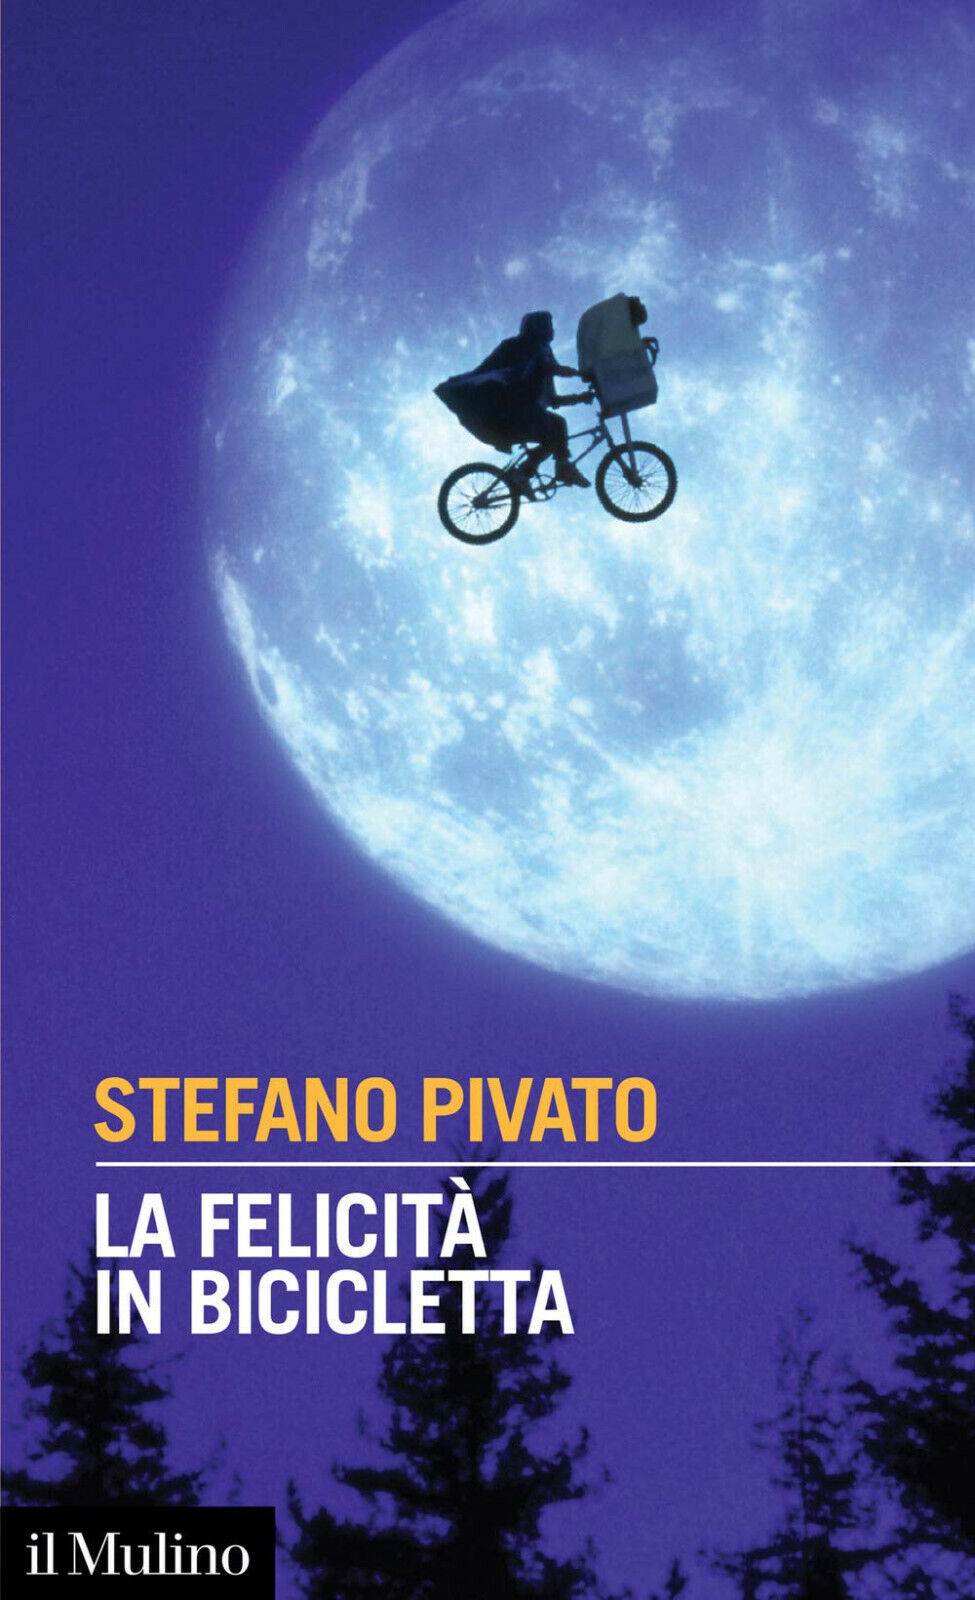 La felicit? in bicicletta - Stefano Pivato - Il mulino, 2020